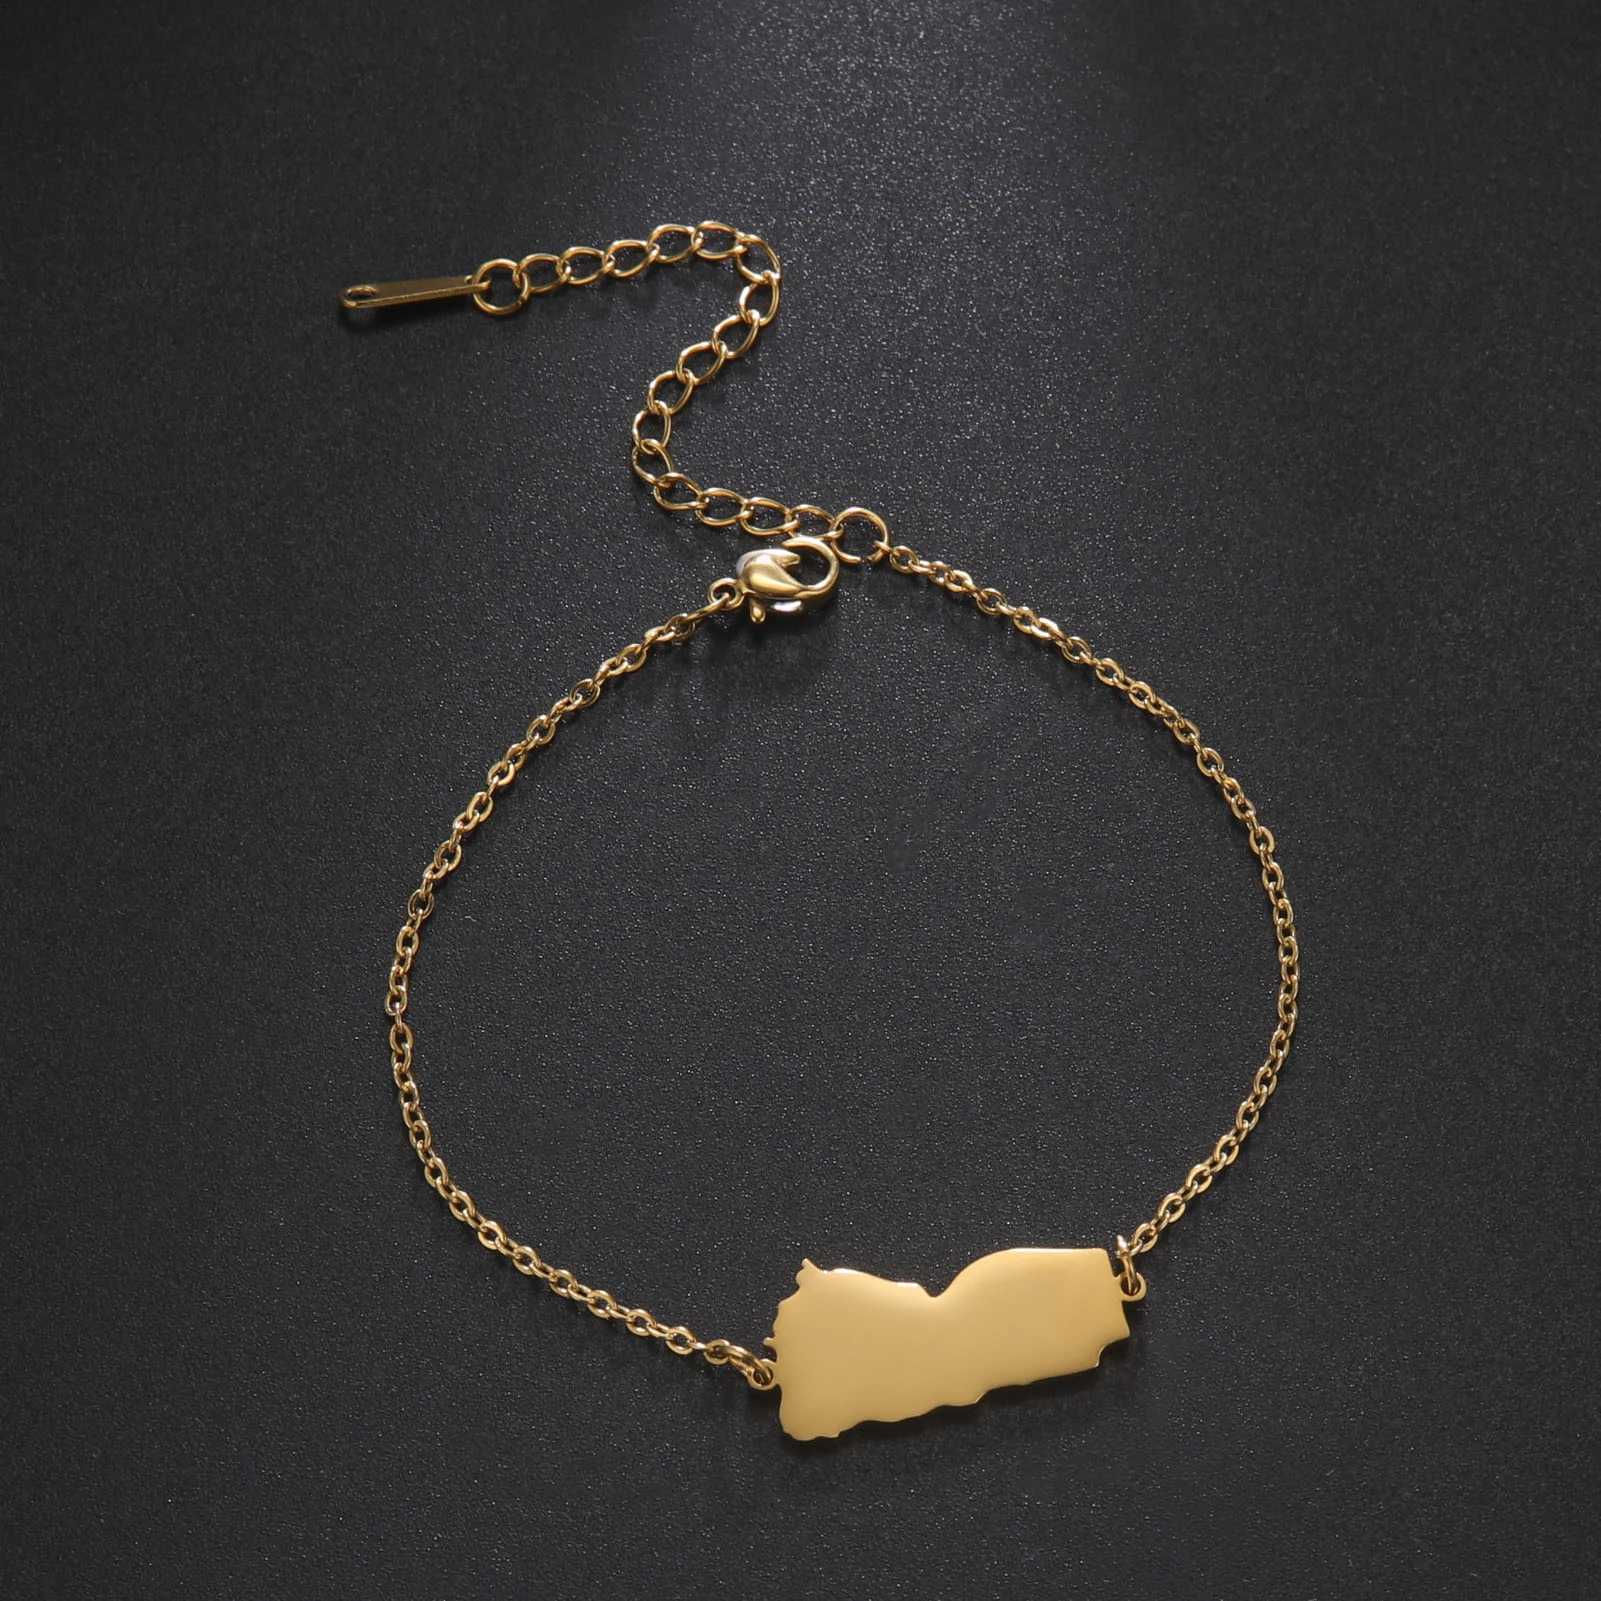 Цепочка с полой картой Сирии Египет Ливан Йемен Карта Браслет Золотой браслет из нержавеющей стали памятный подарок другу Q240401